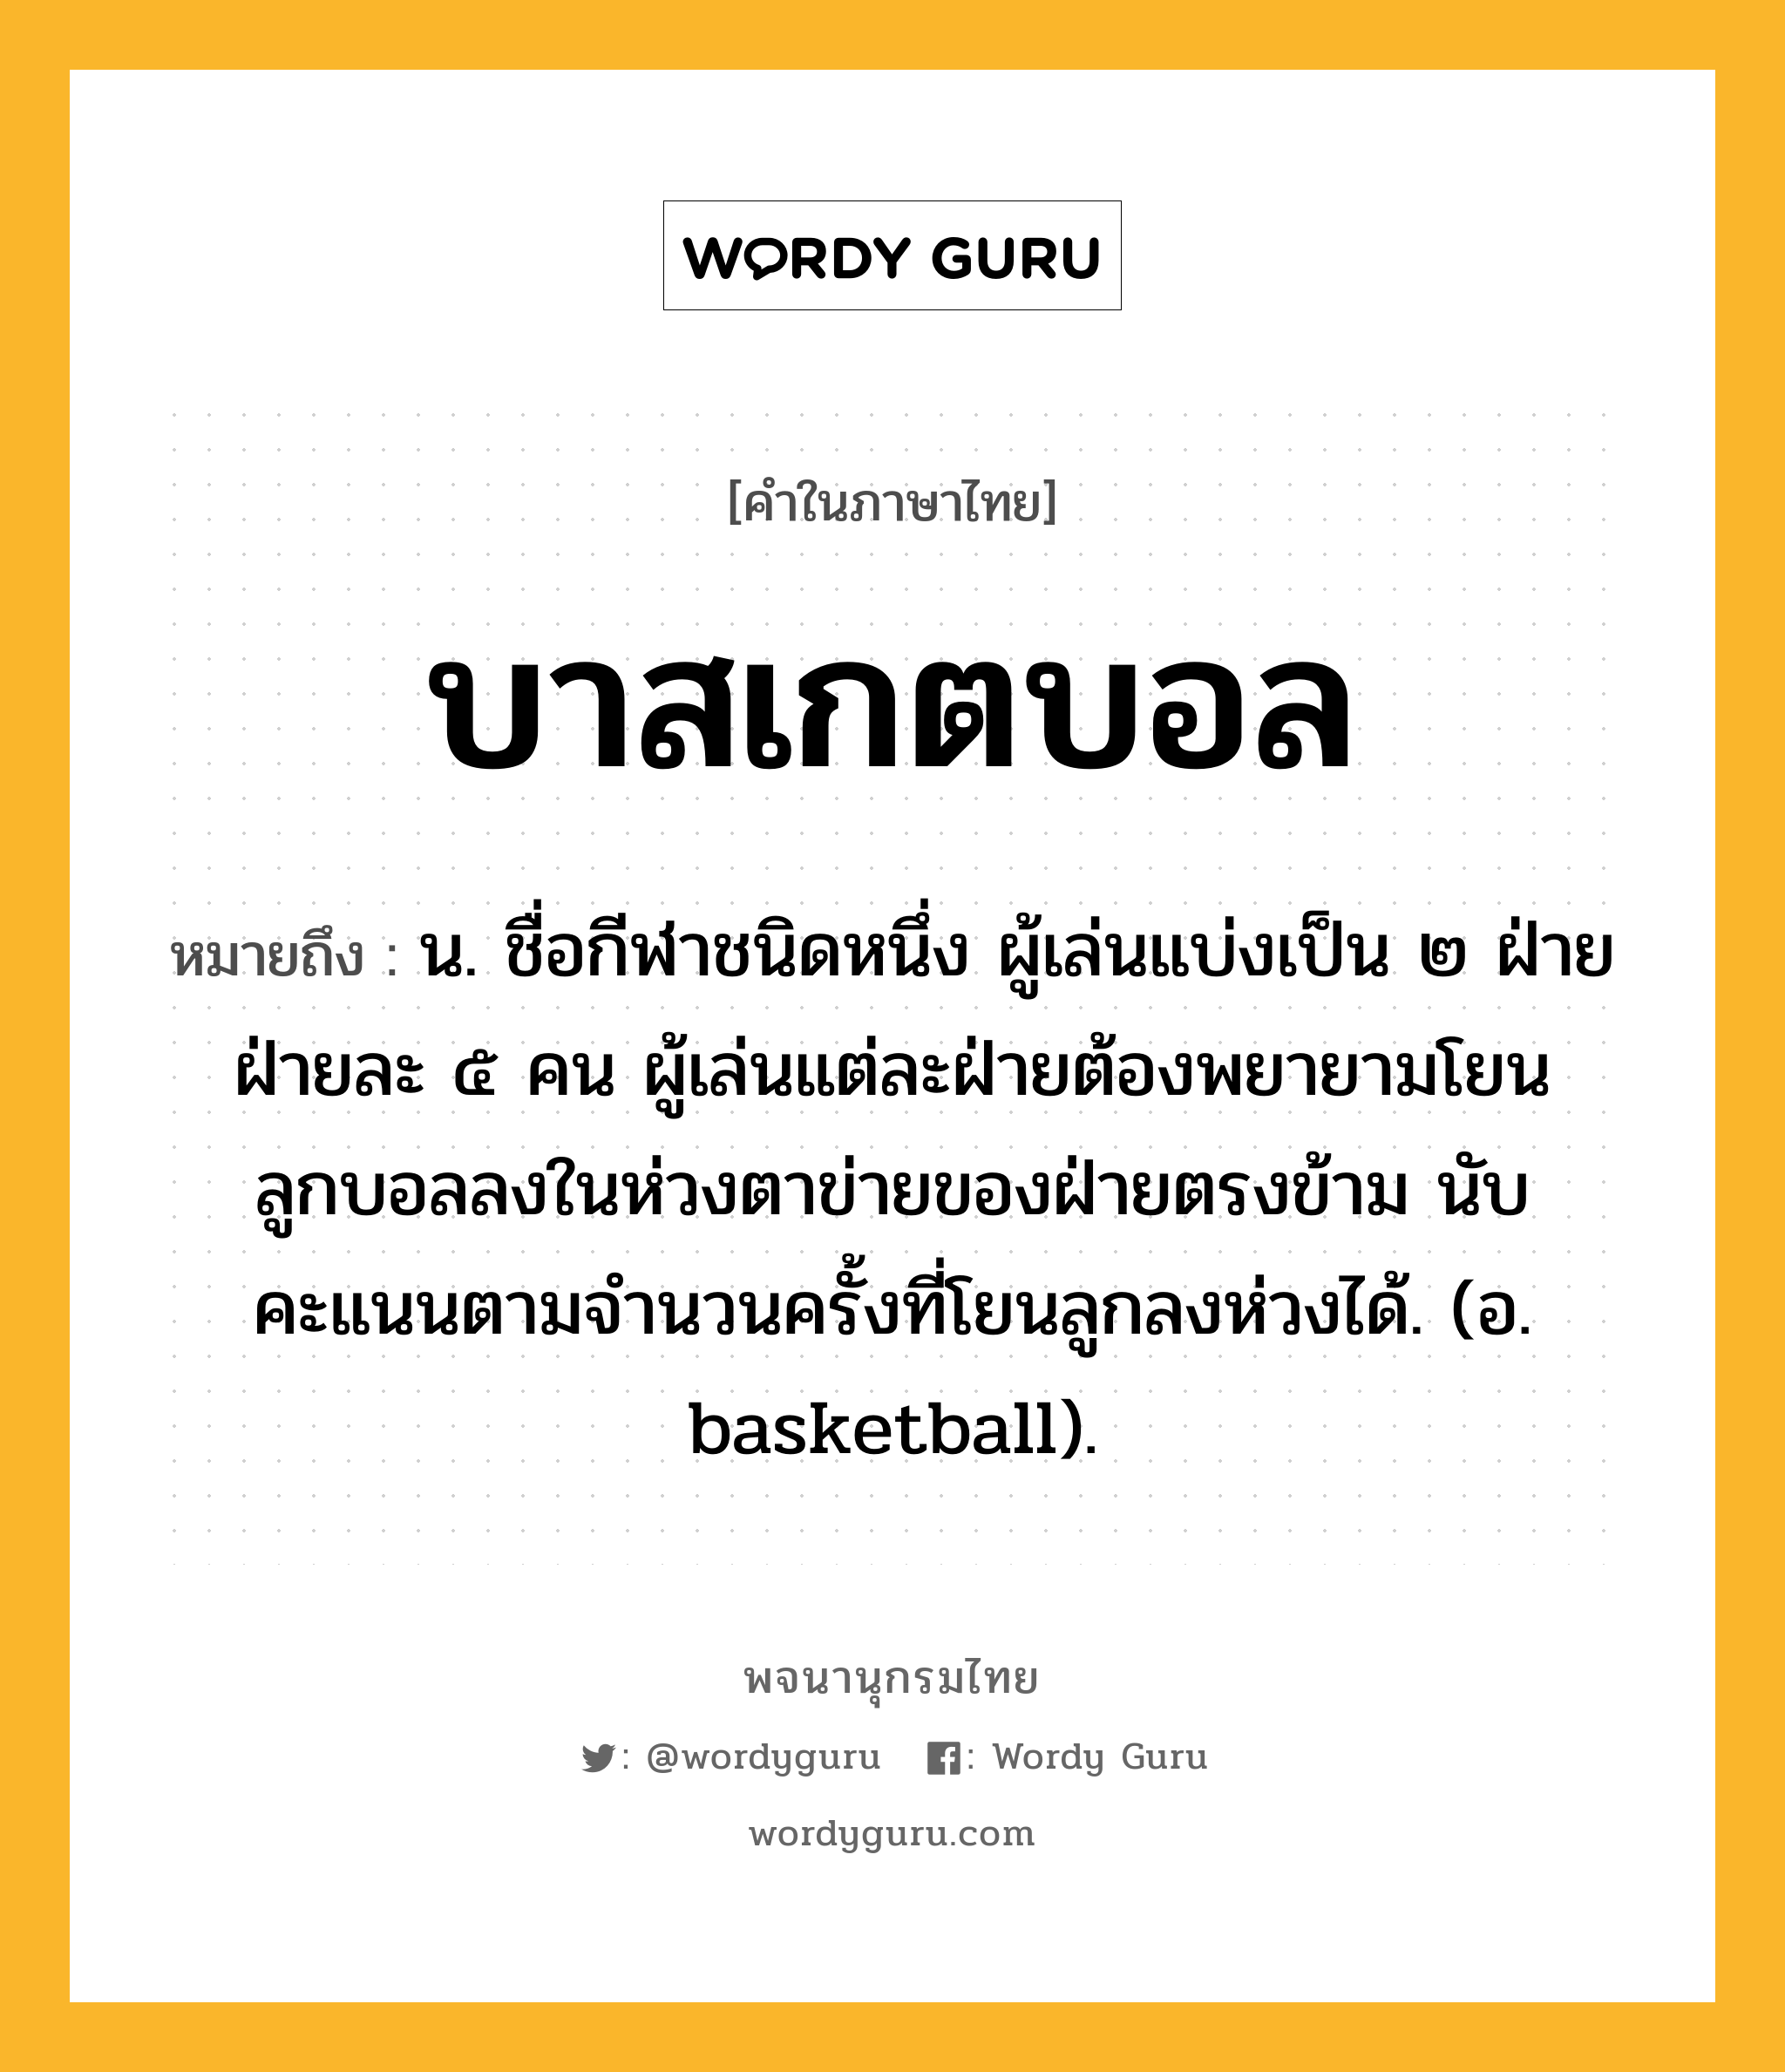 บาสเกตบอล หมายถึงอะไร?, คำในภาษาไทย บาสเกตบอล หมายถึง น. ชื่อกีฬาชนิดหนึ่ง ผู้เล่นแบ่งเป็น ๒ ฝ่าย ฝ่ายละ ๕ คน ผู้เล่นแต่ละฝ่ายต้องพยายามโยนลูกบอลลงในห่วงตาข่ายของฝ่ายตรงข้าม นับคะแนนตามจํานวนครั้งที่โยนลูกลงห่วงได้. (อ. basketball).